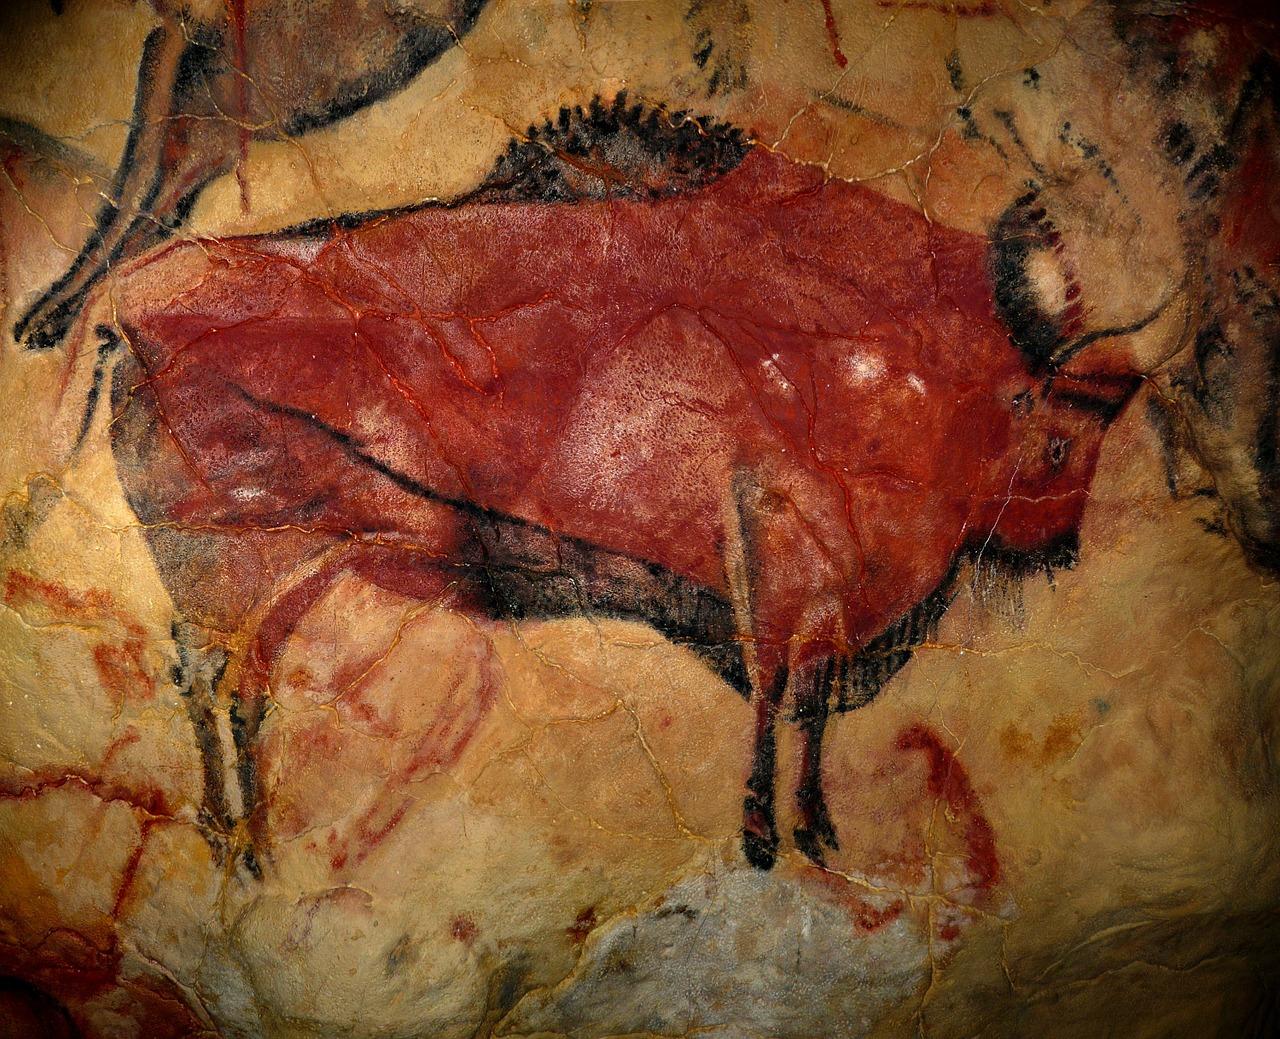 Pinturas rupestres en la Sima de los Huesos. Atapuerca.